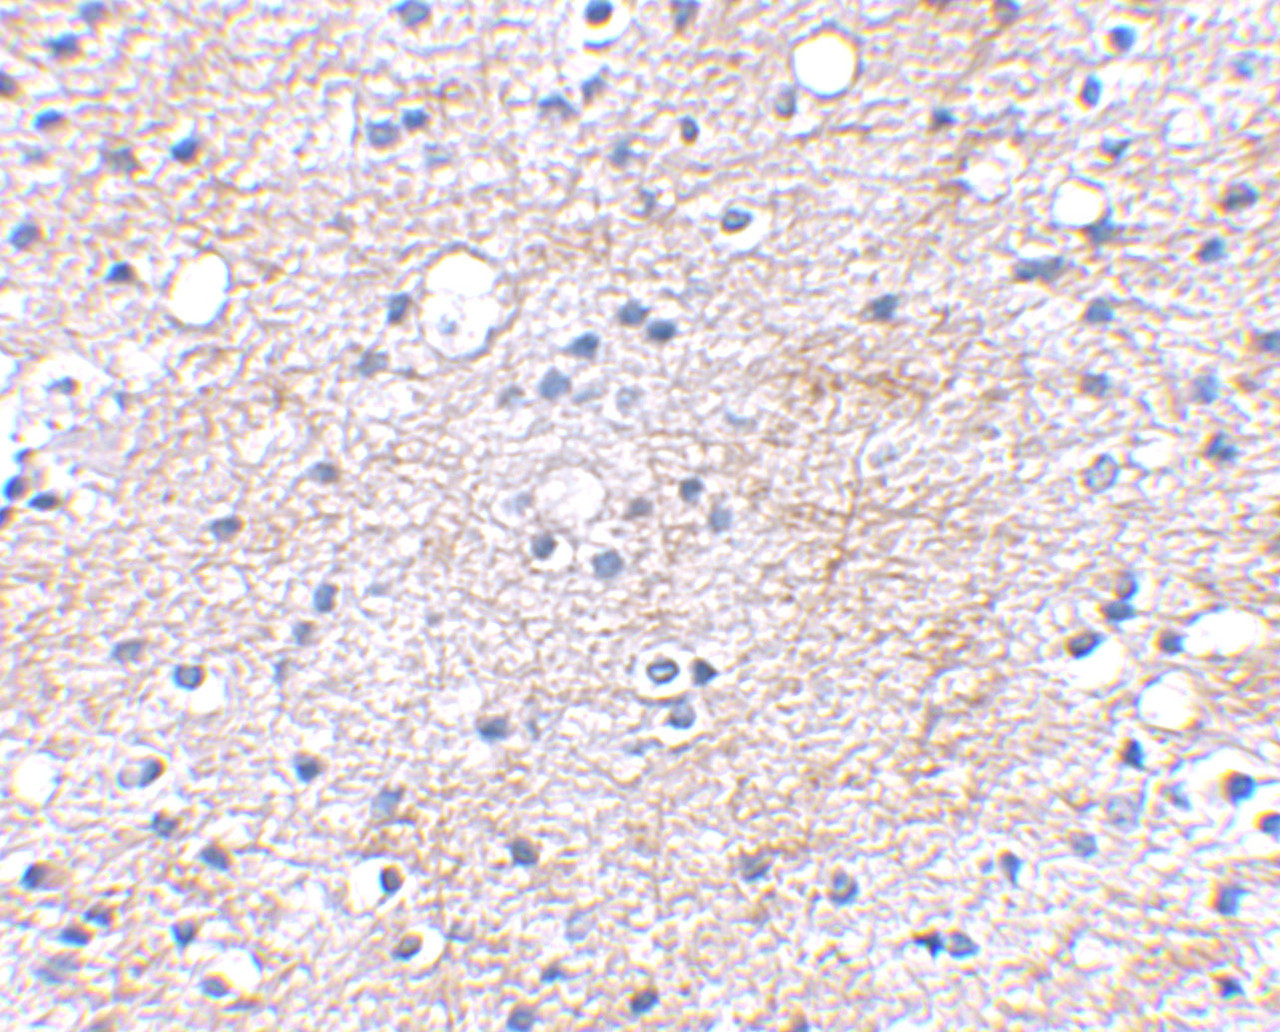 Immunohistochemical staining of human brain tissue using LGI1 antibody at 2.5 ug/mL.